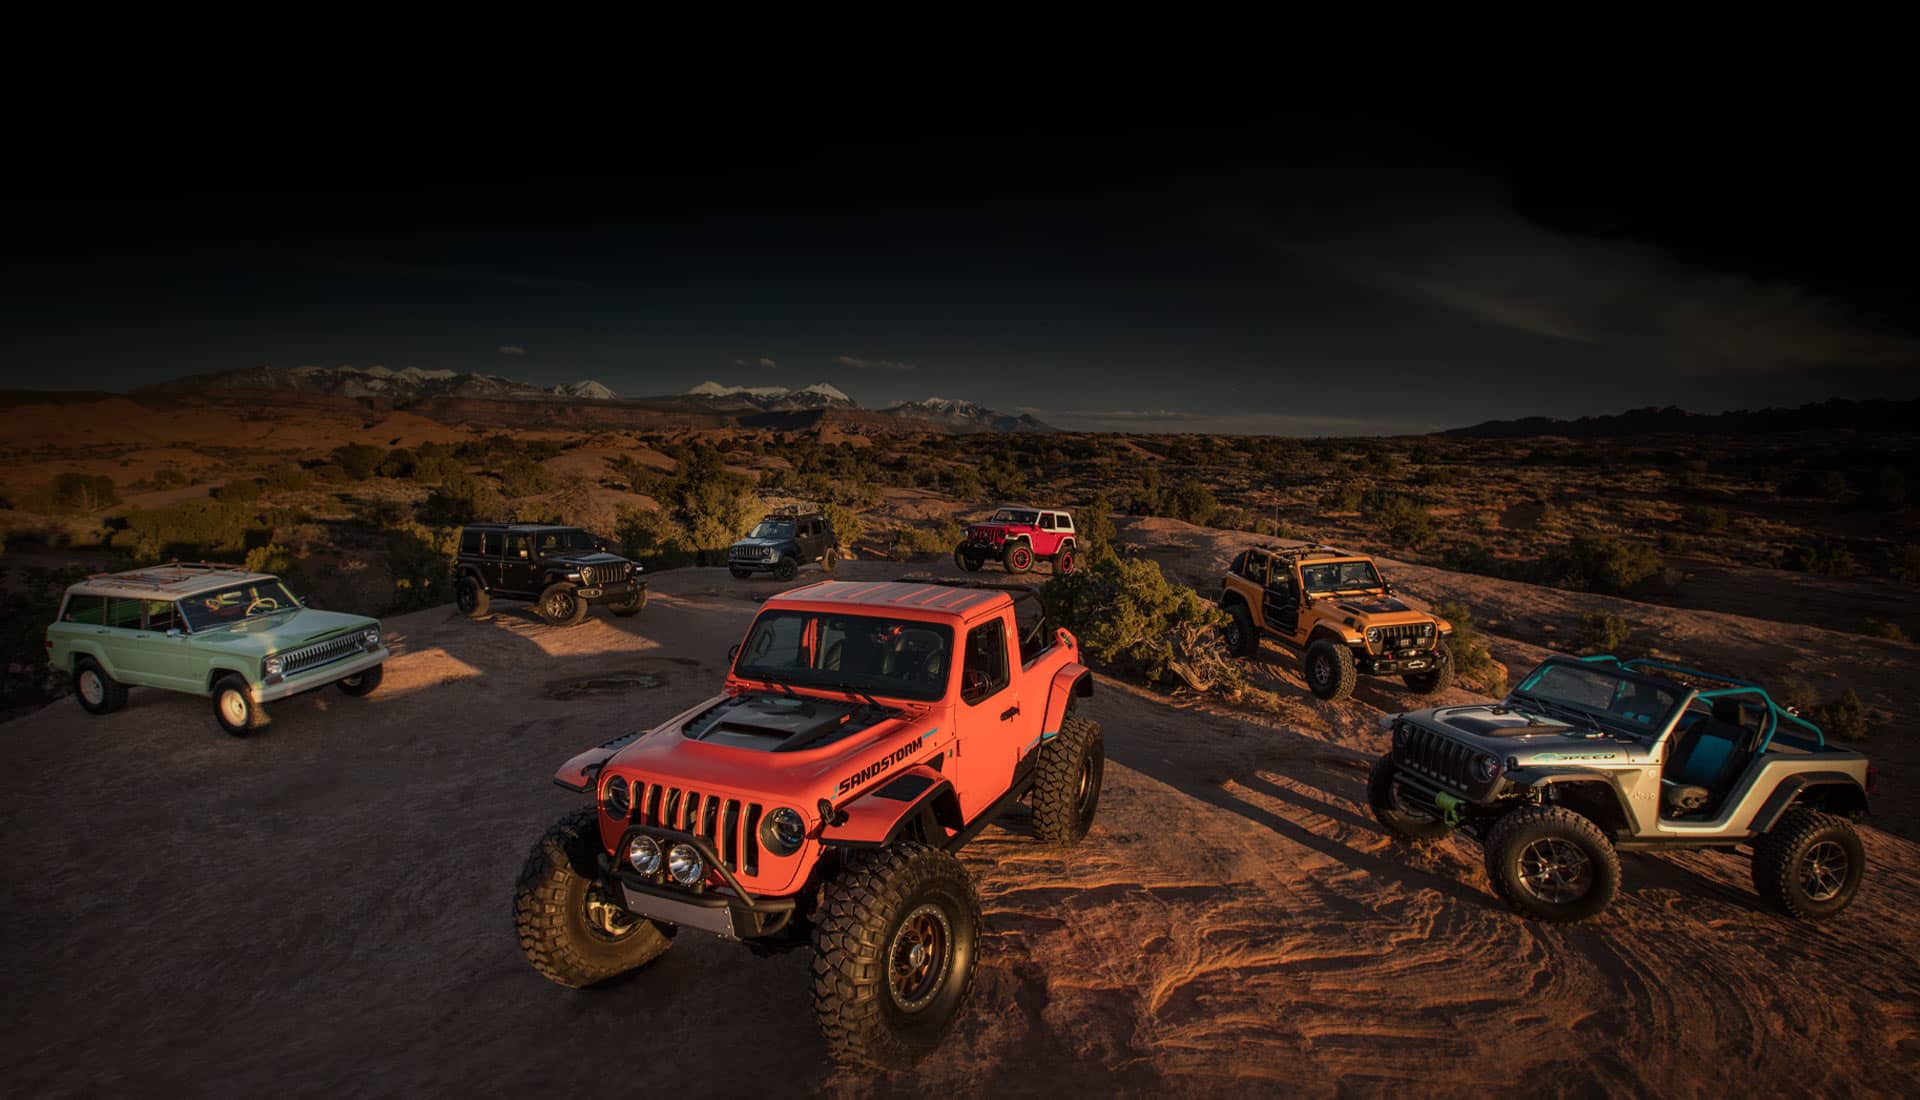 Una combinación de siete vehículos conceptuales de la marca Jeep estacionados en una meseta rocosa en las montañas, por la noche, iluminados con luz artificial.